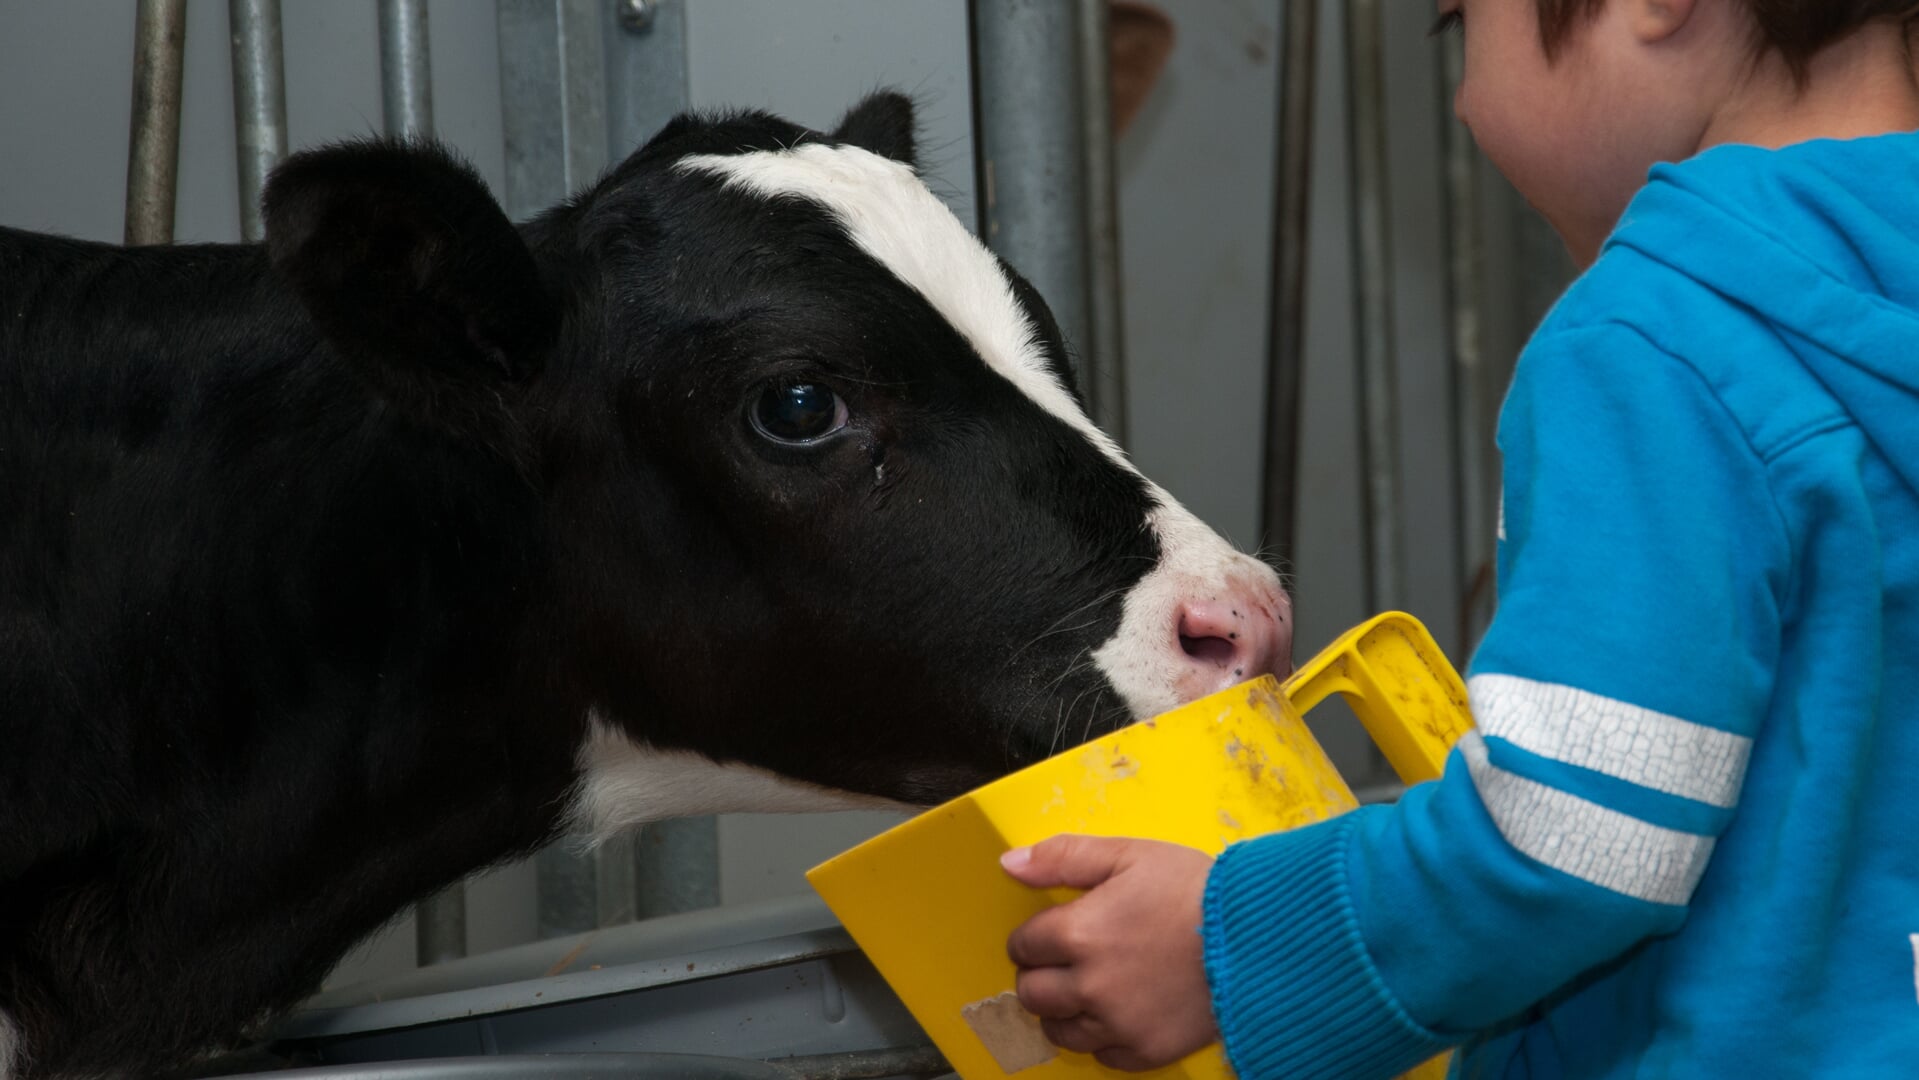 Melkveebedrijf Alders in Overloon houdt op tweede paasdag open huis. 